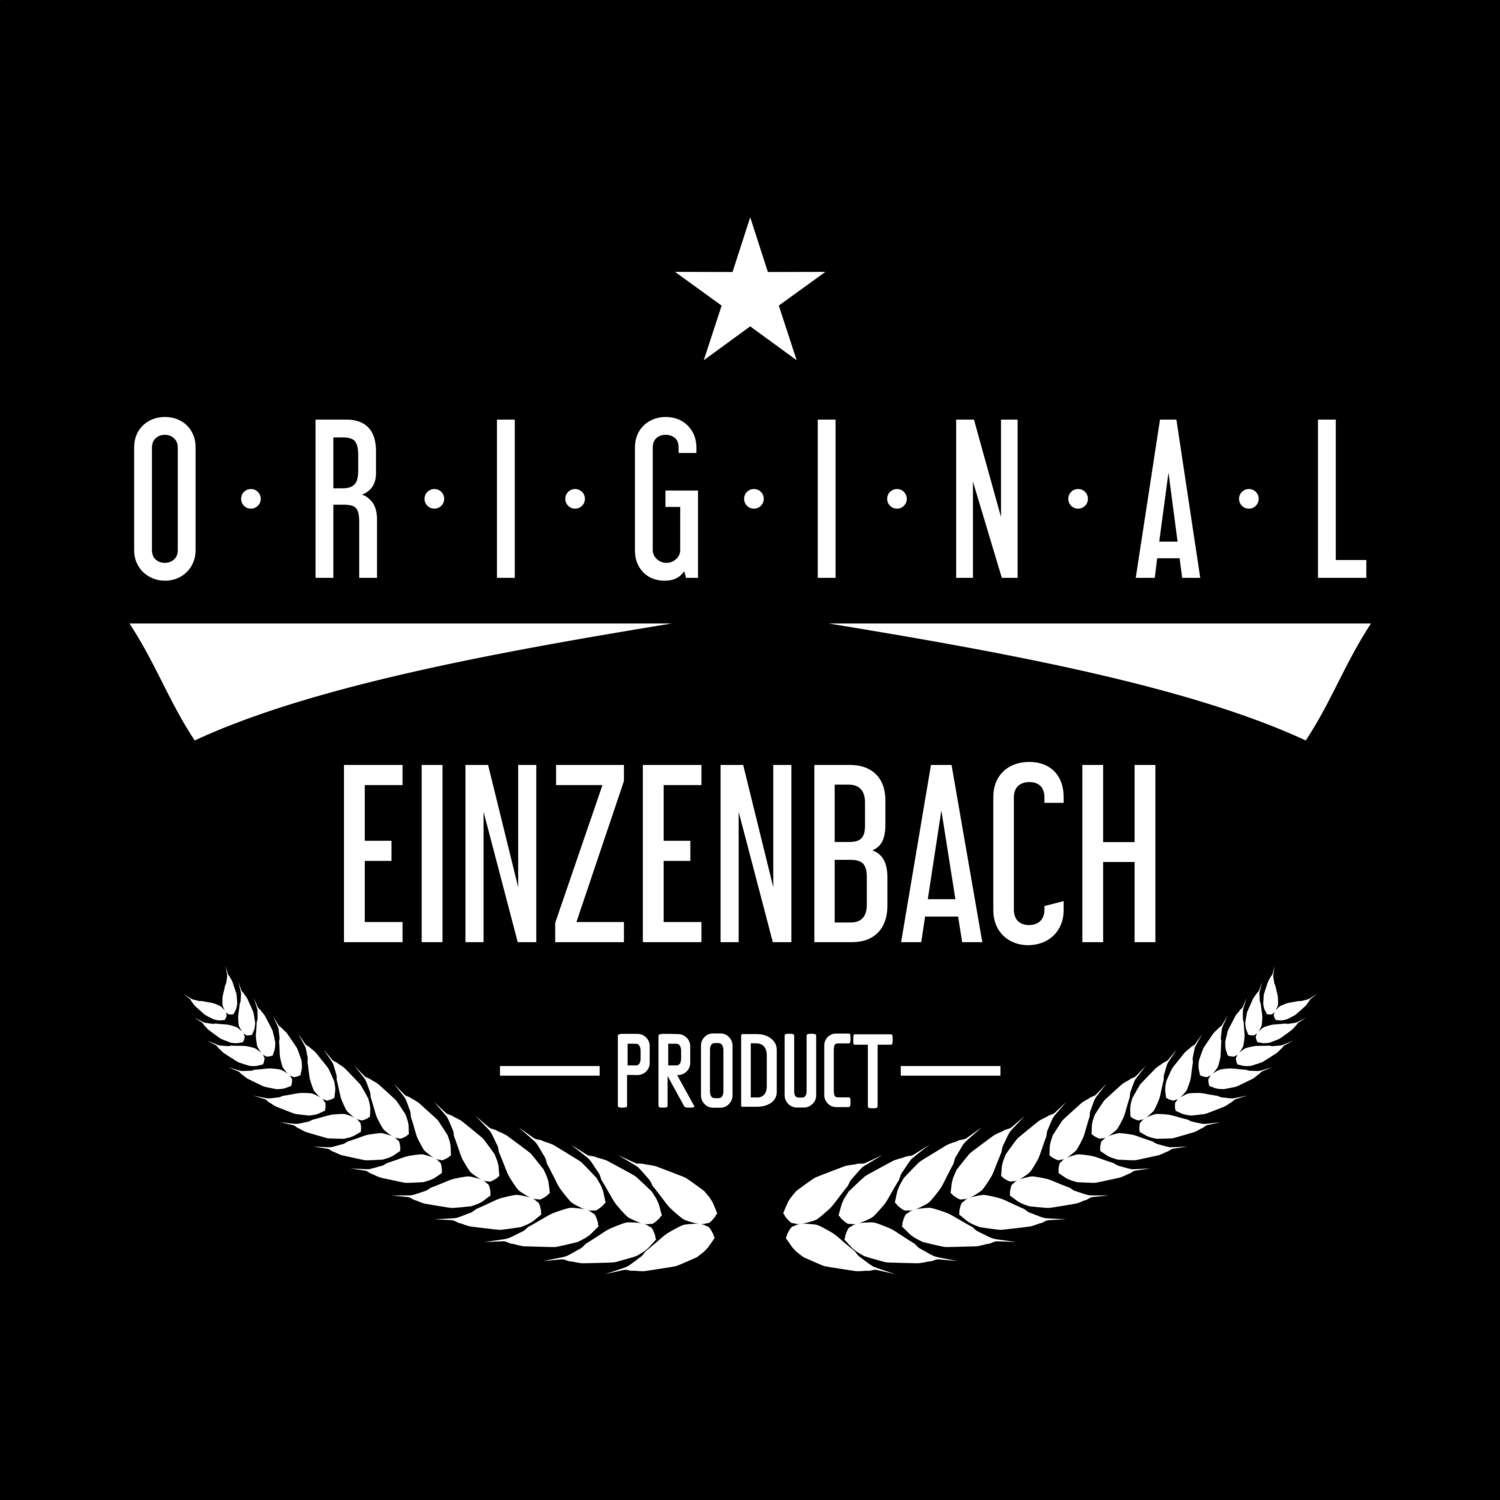 Einzenbach T-Shirt »Original Product«